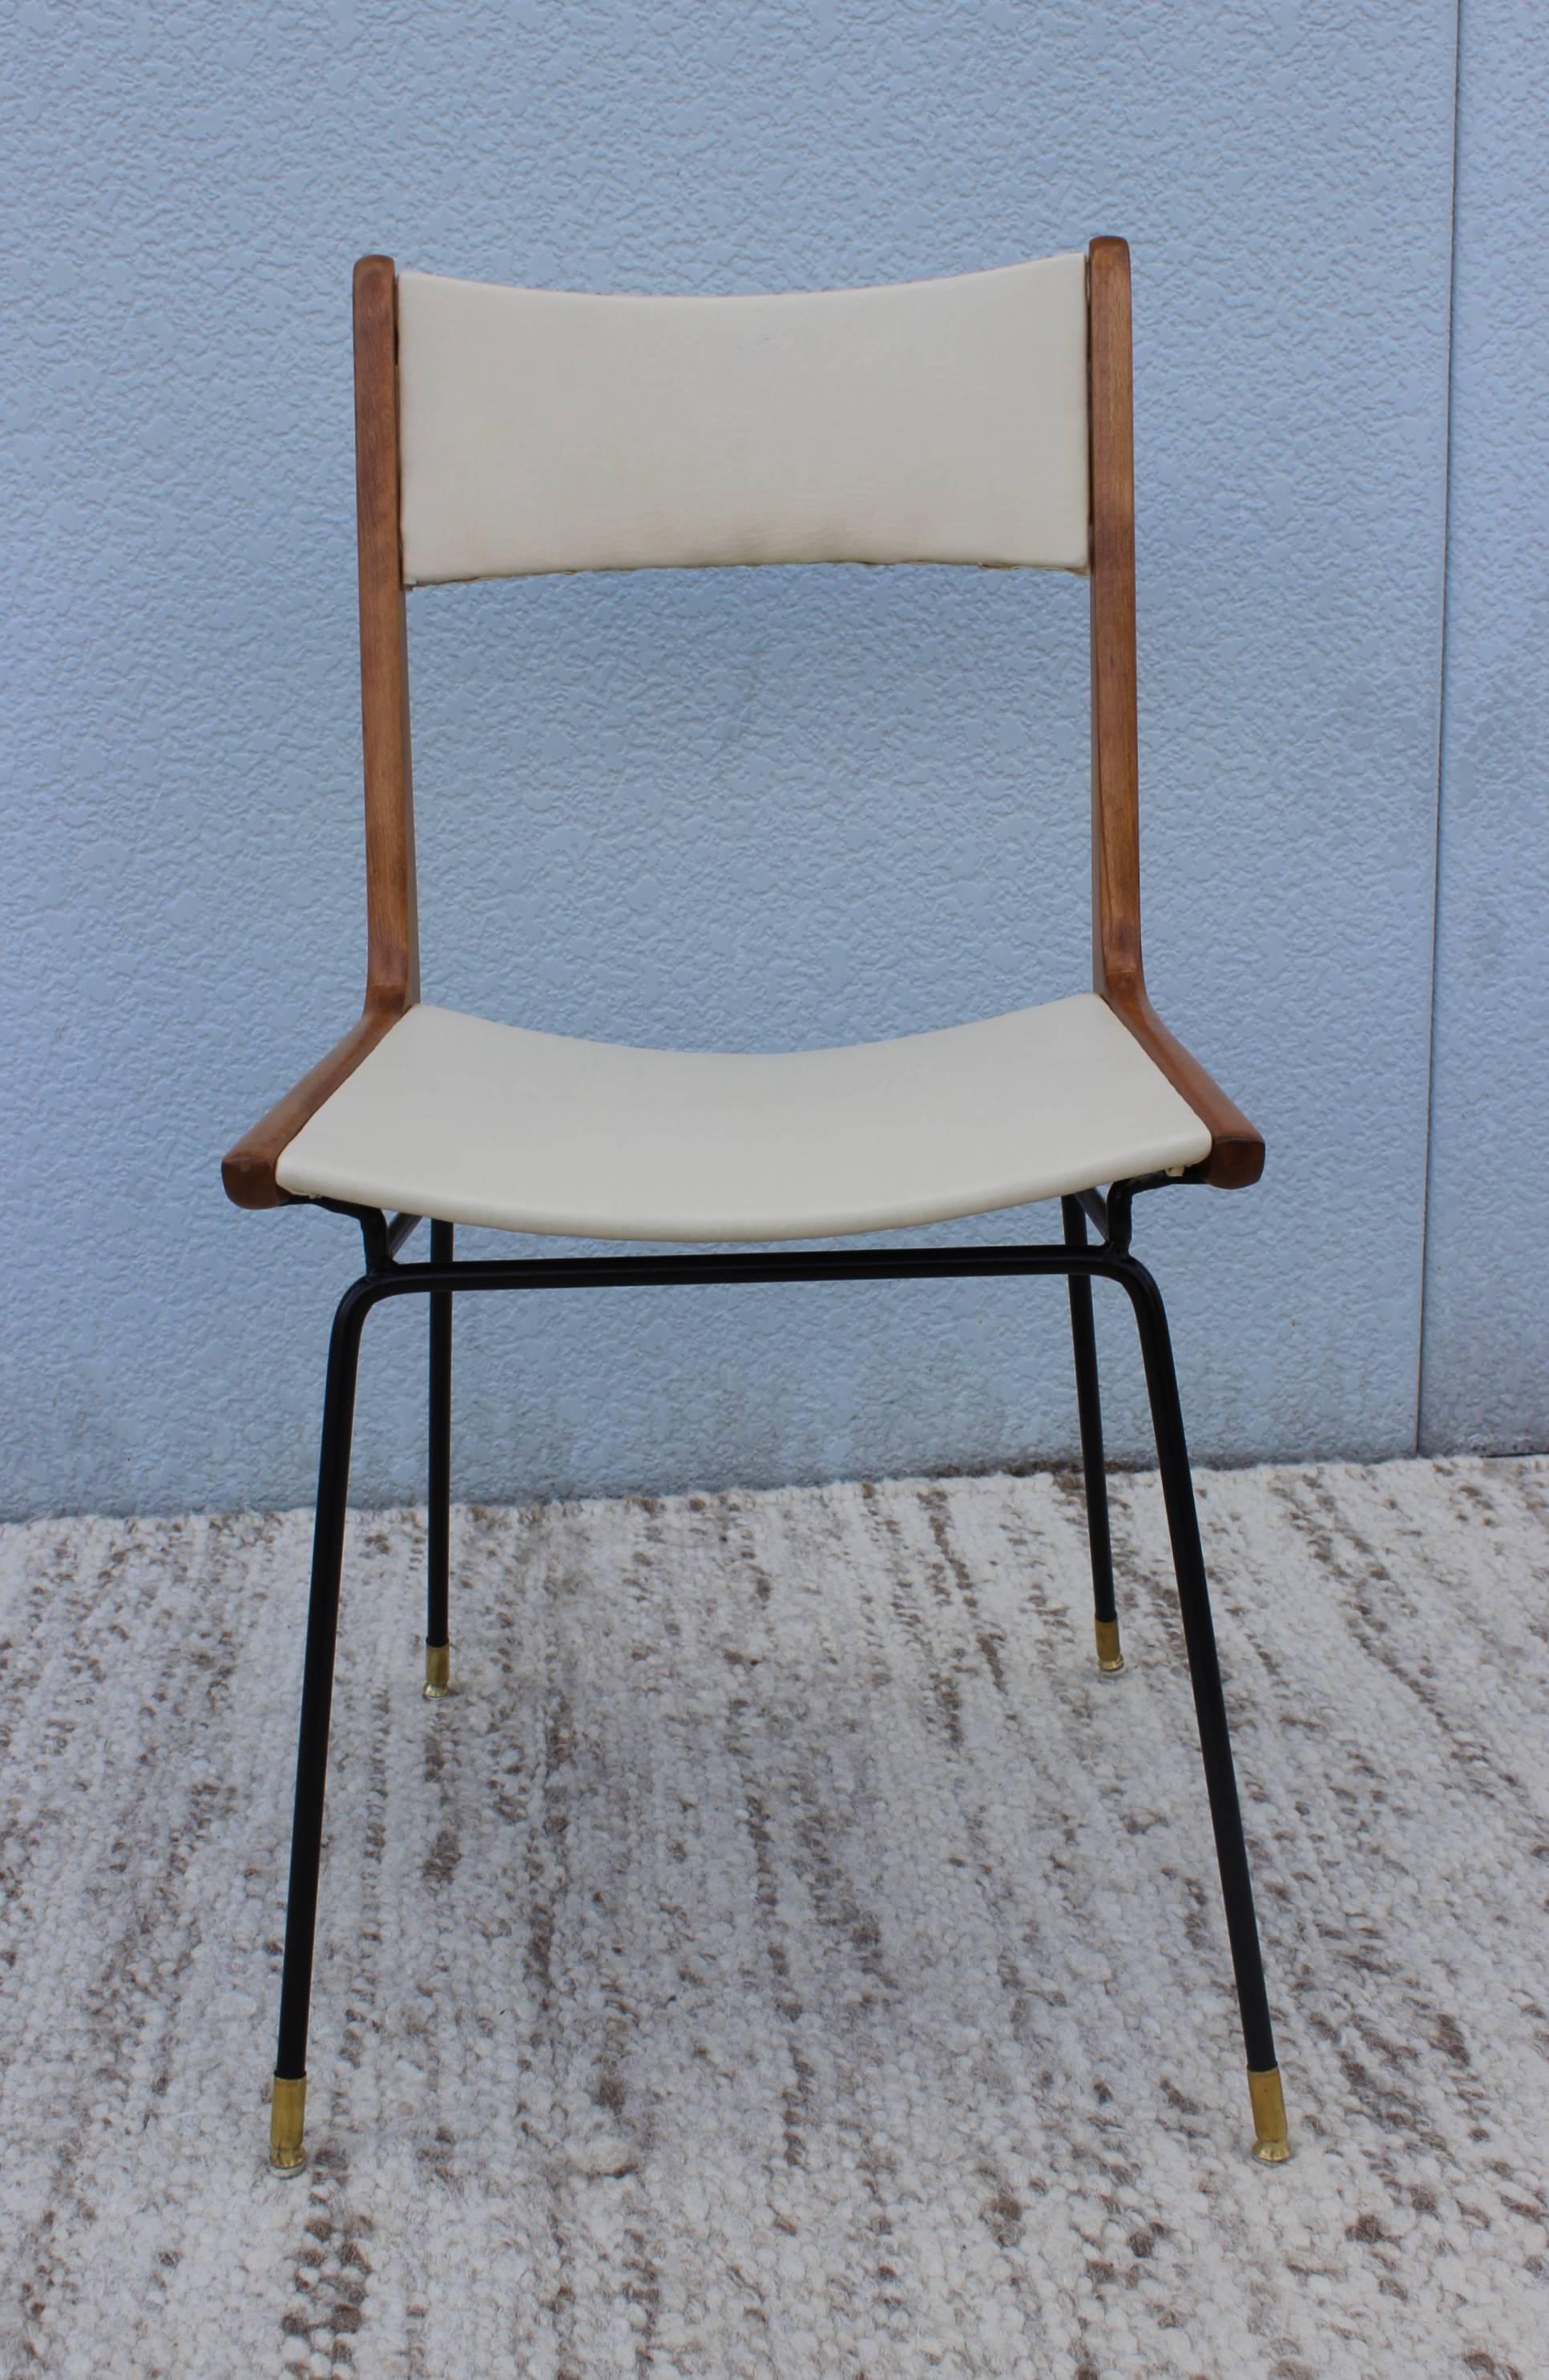 Italian Dining Chairs, style of Carlo di Carli, ca. 1958